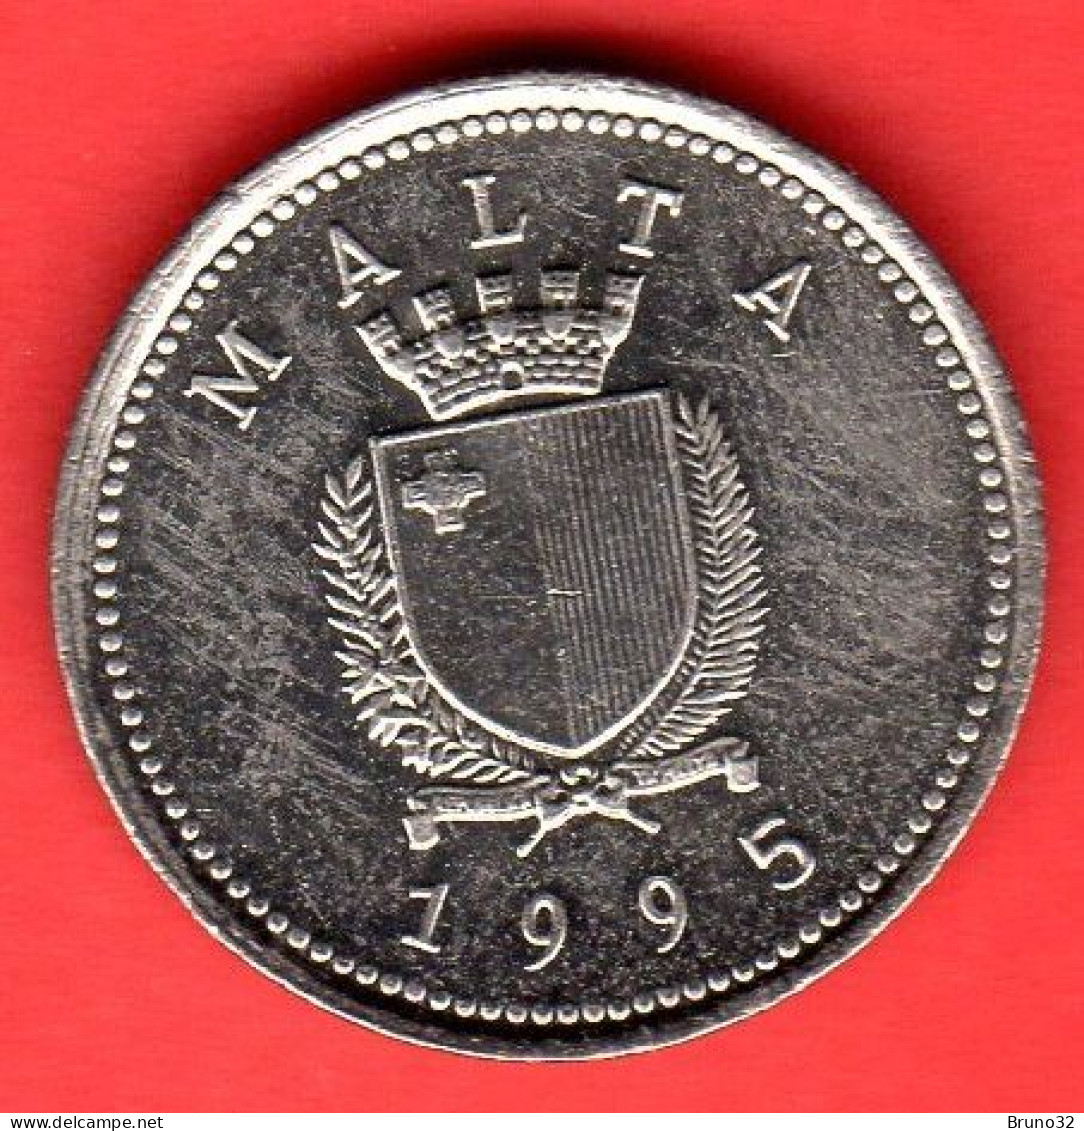 MALTA - 1995 - 2 Cents - QFDC/aUNC - Come Da Foto - Malta